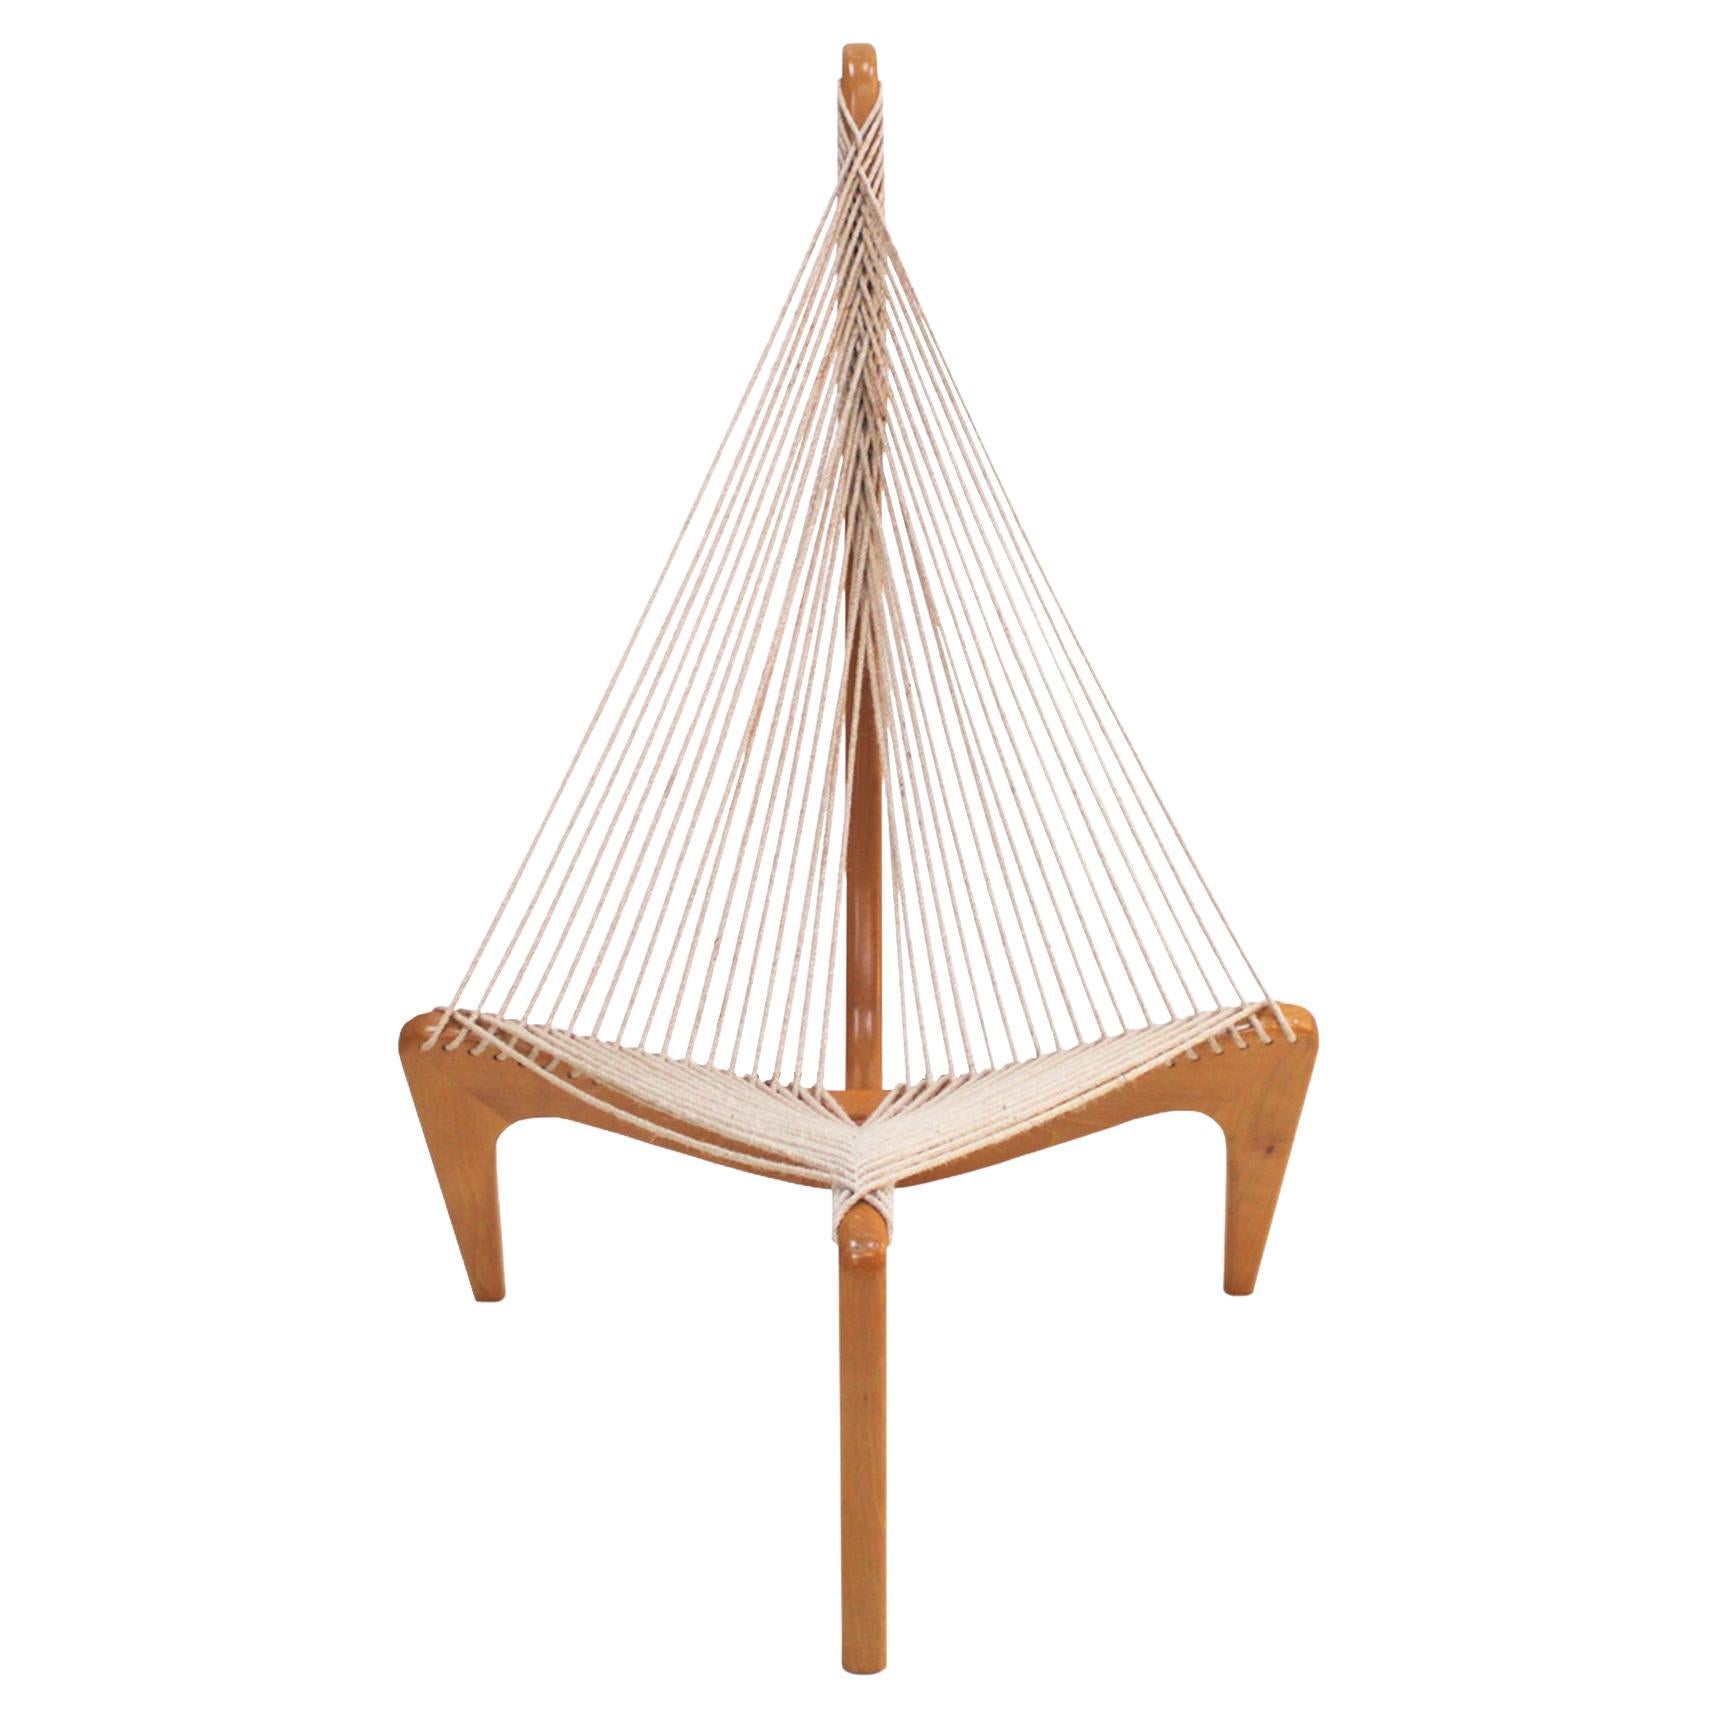 Chaise harpe en bois et cordes de Jørgen Høvelskov, milieu du siècle, Danemark